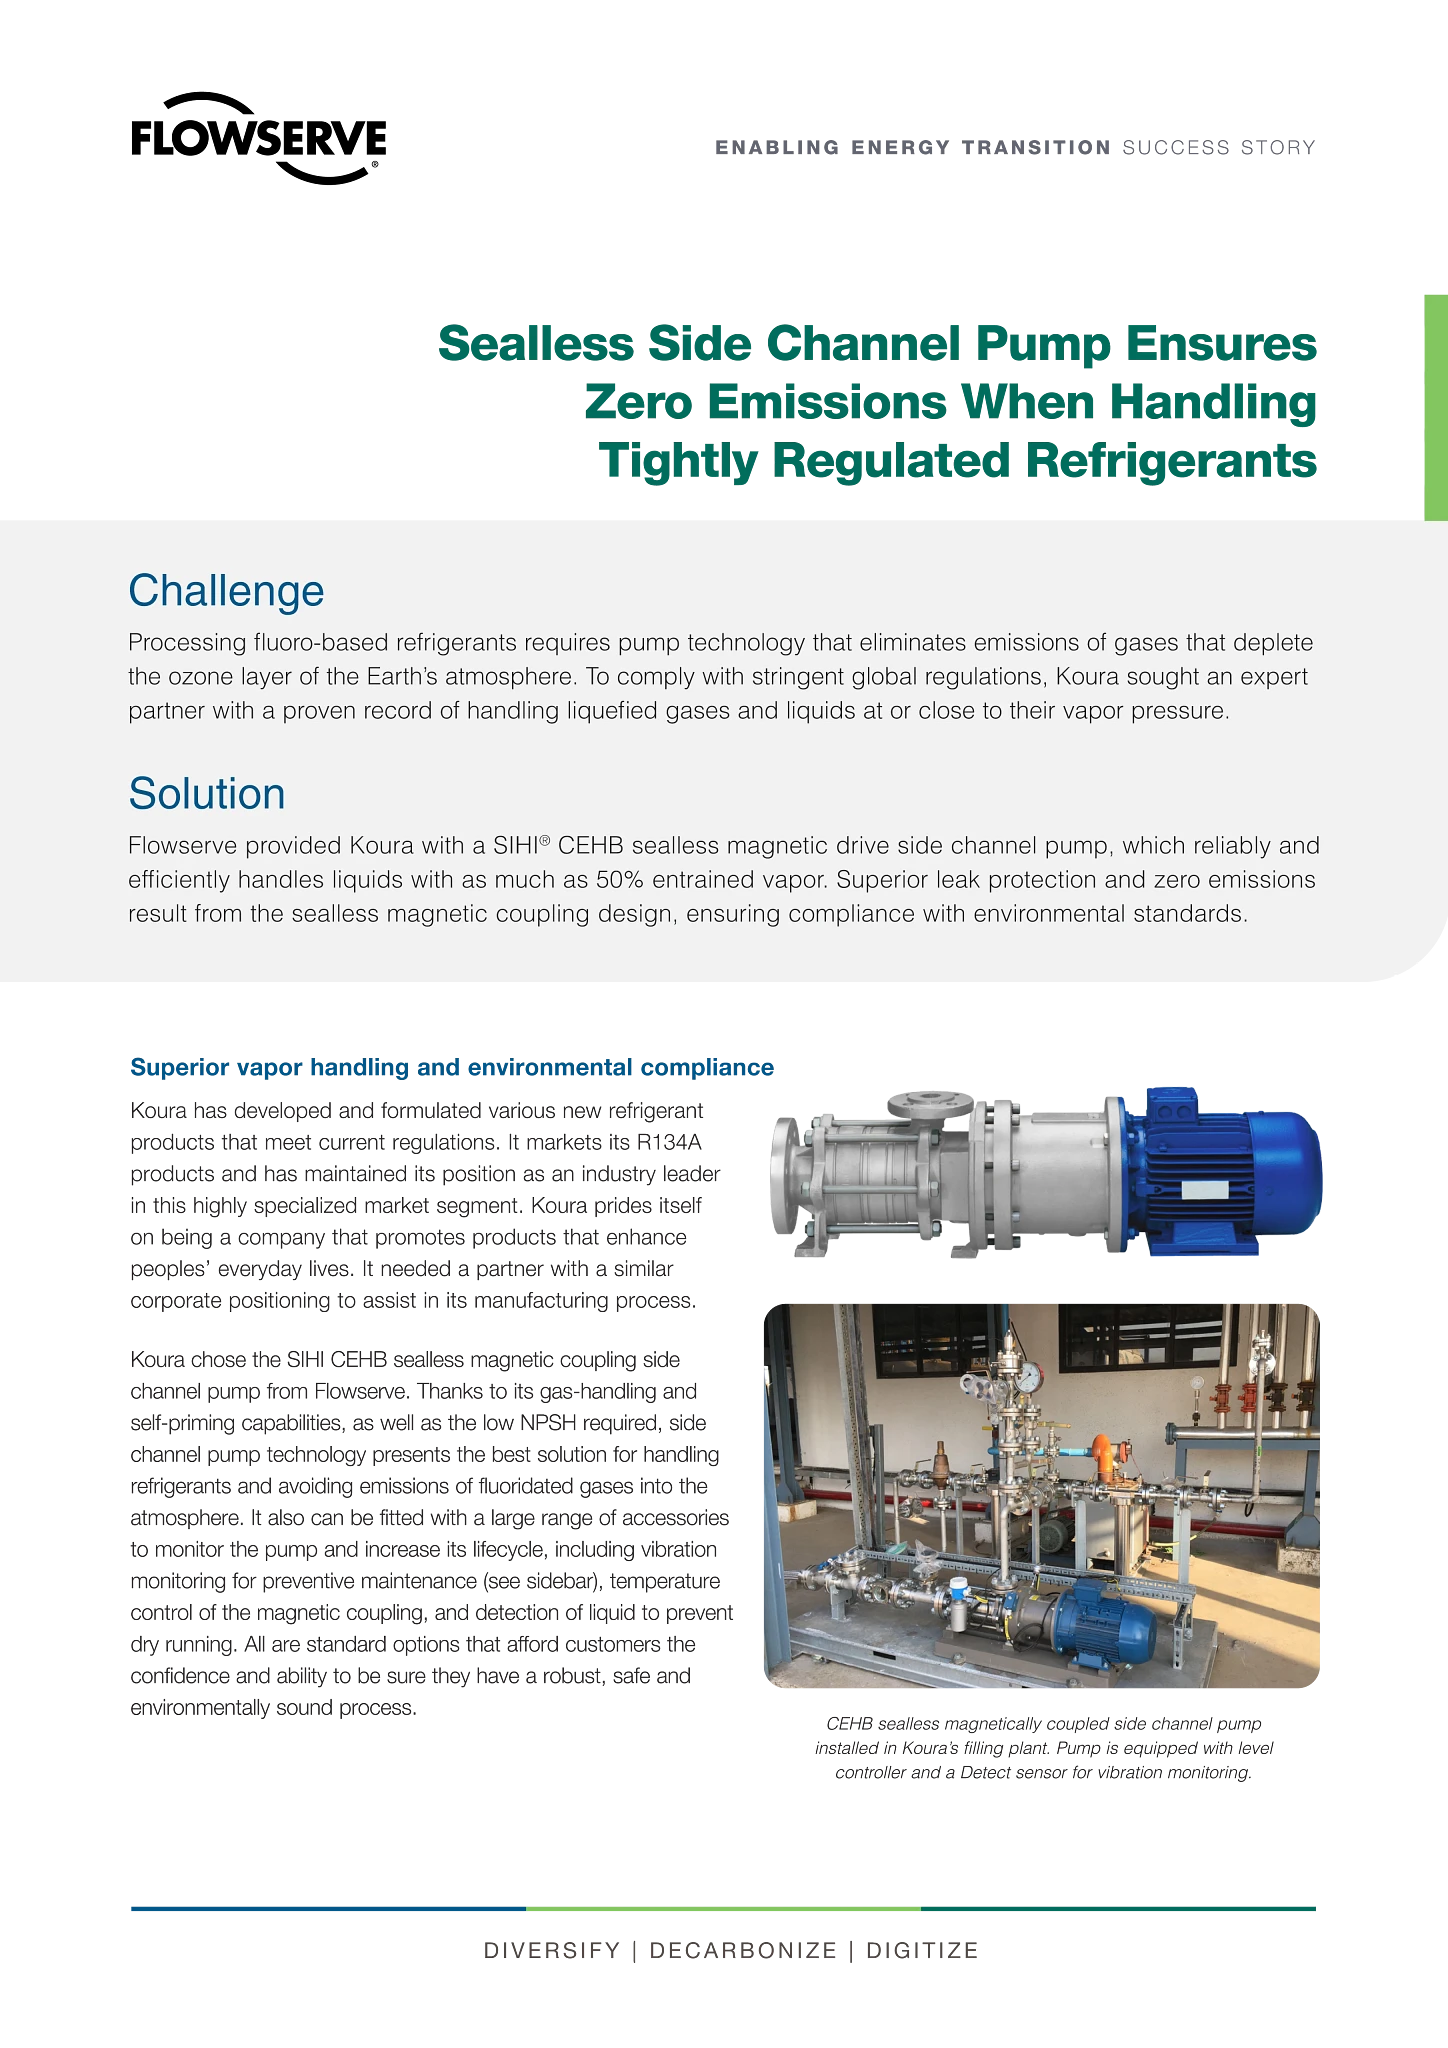 无密封侧通道泵确保在处理严格监管的制冷剂时实现零排放